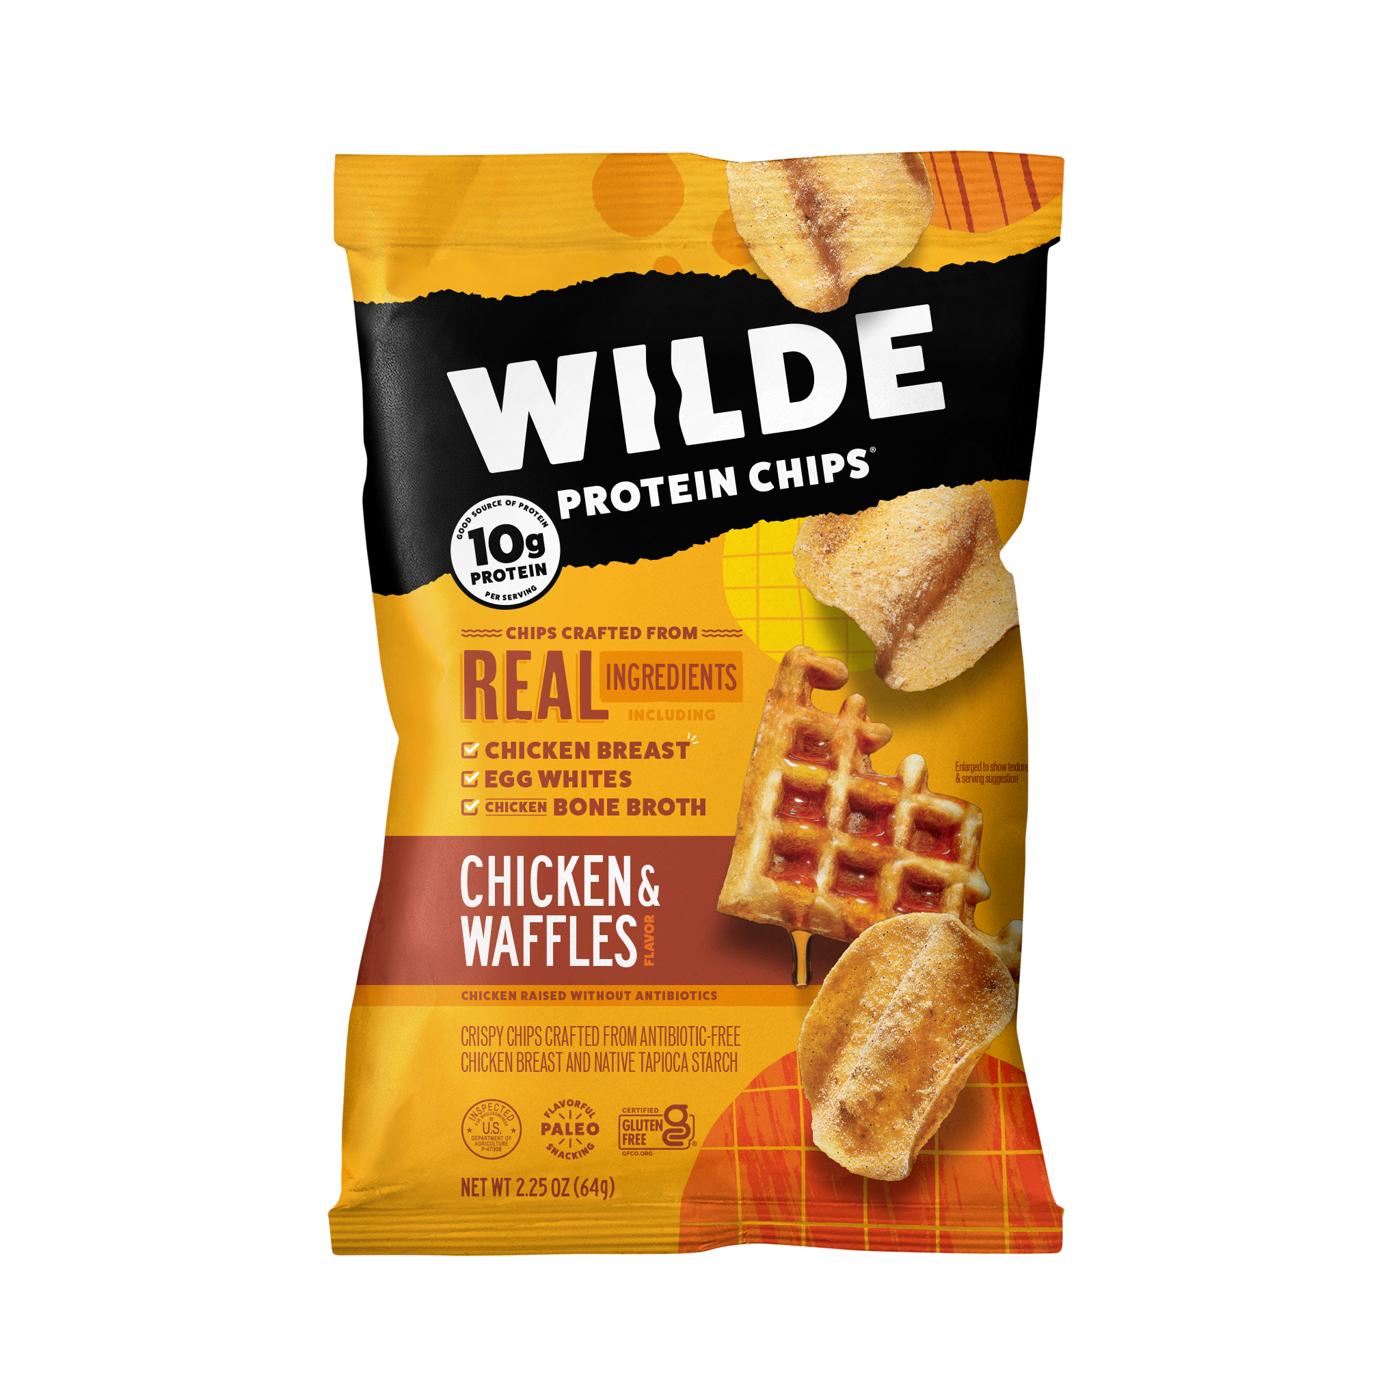 Wilde Chicken & Waffles Chicken Protein Chips; image 1 of 4